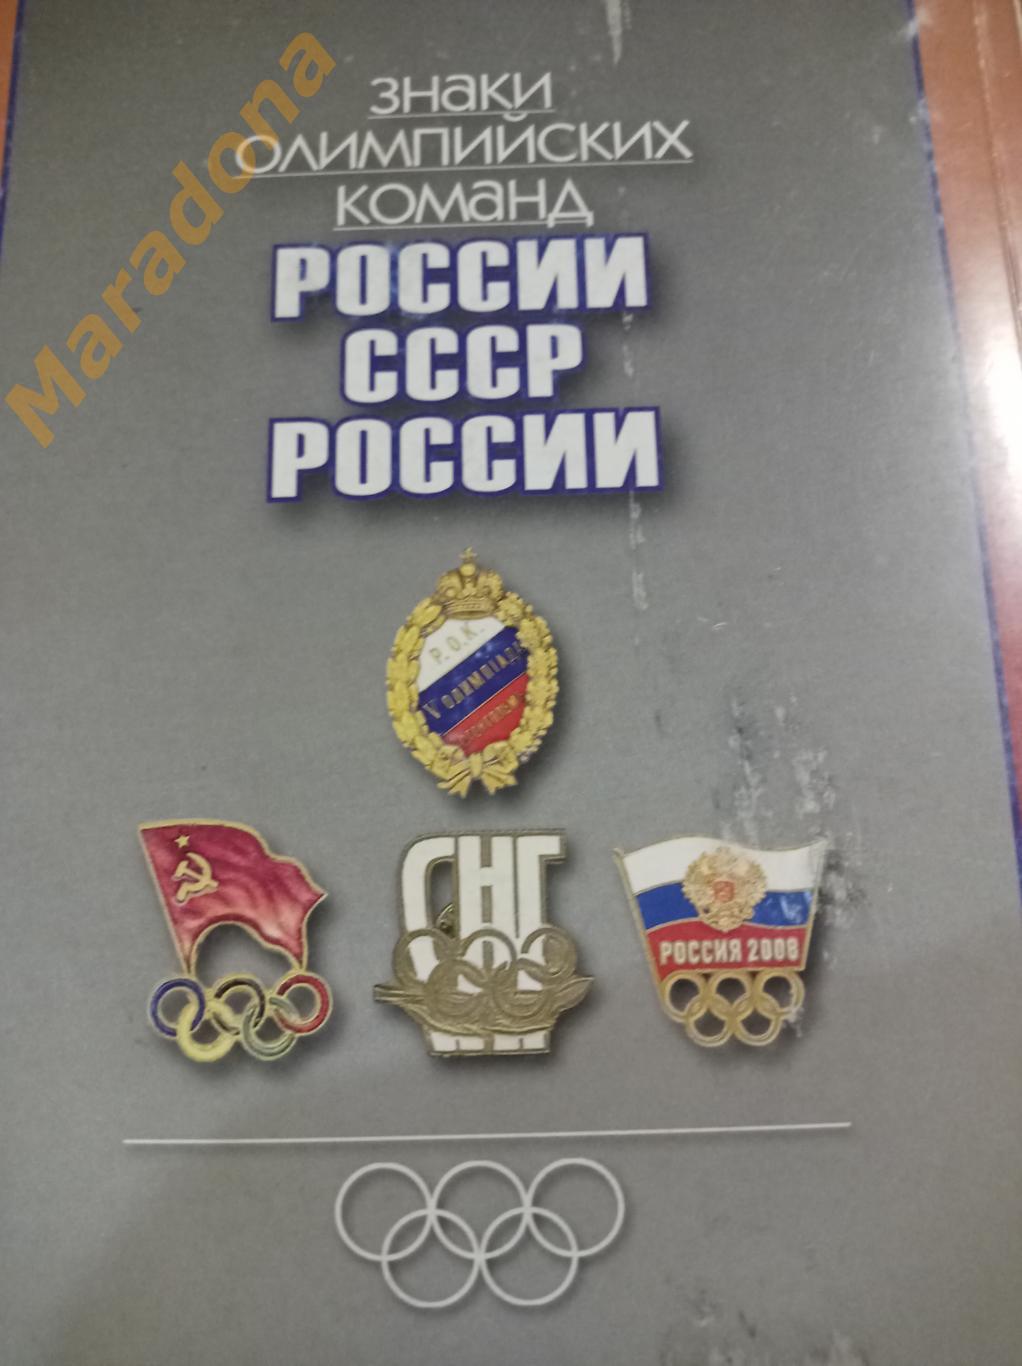 Знаки олимпийских команд России, СССР, России 2010 Москва 7